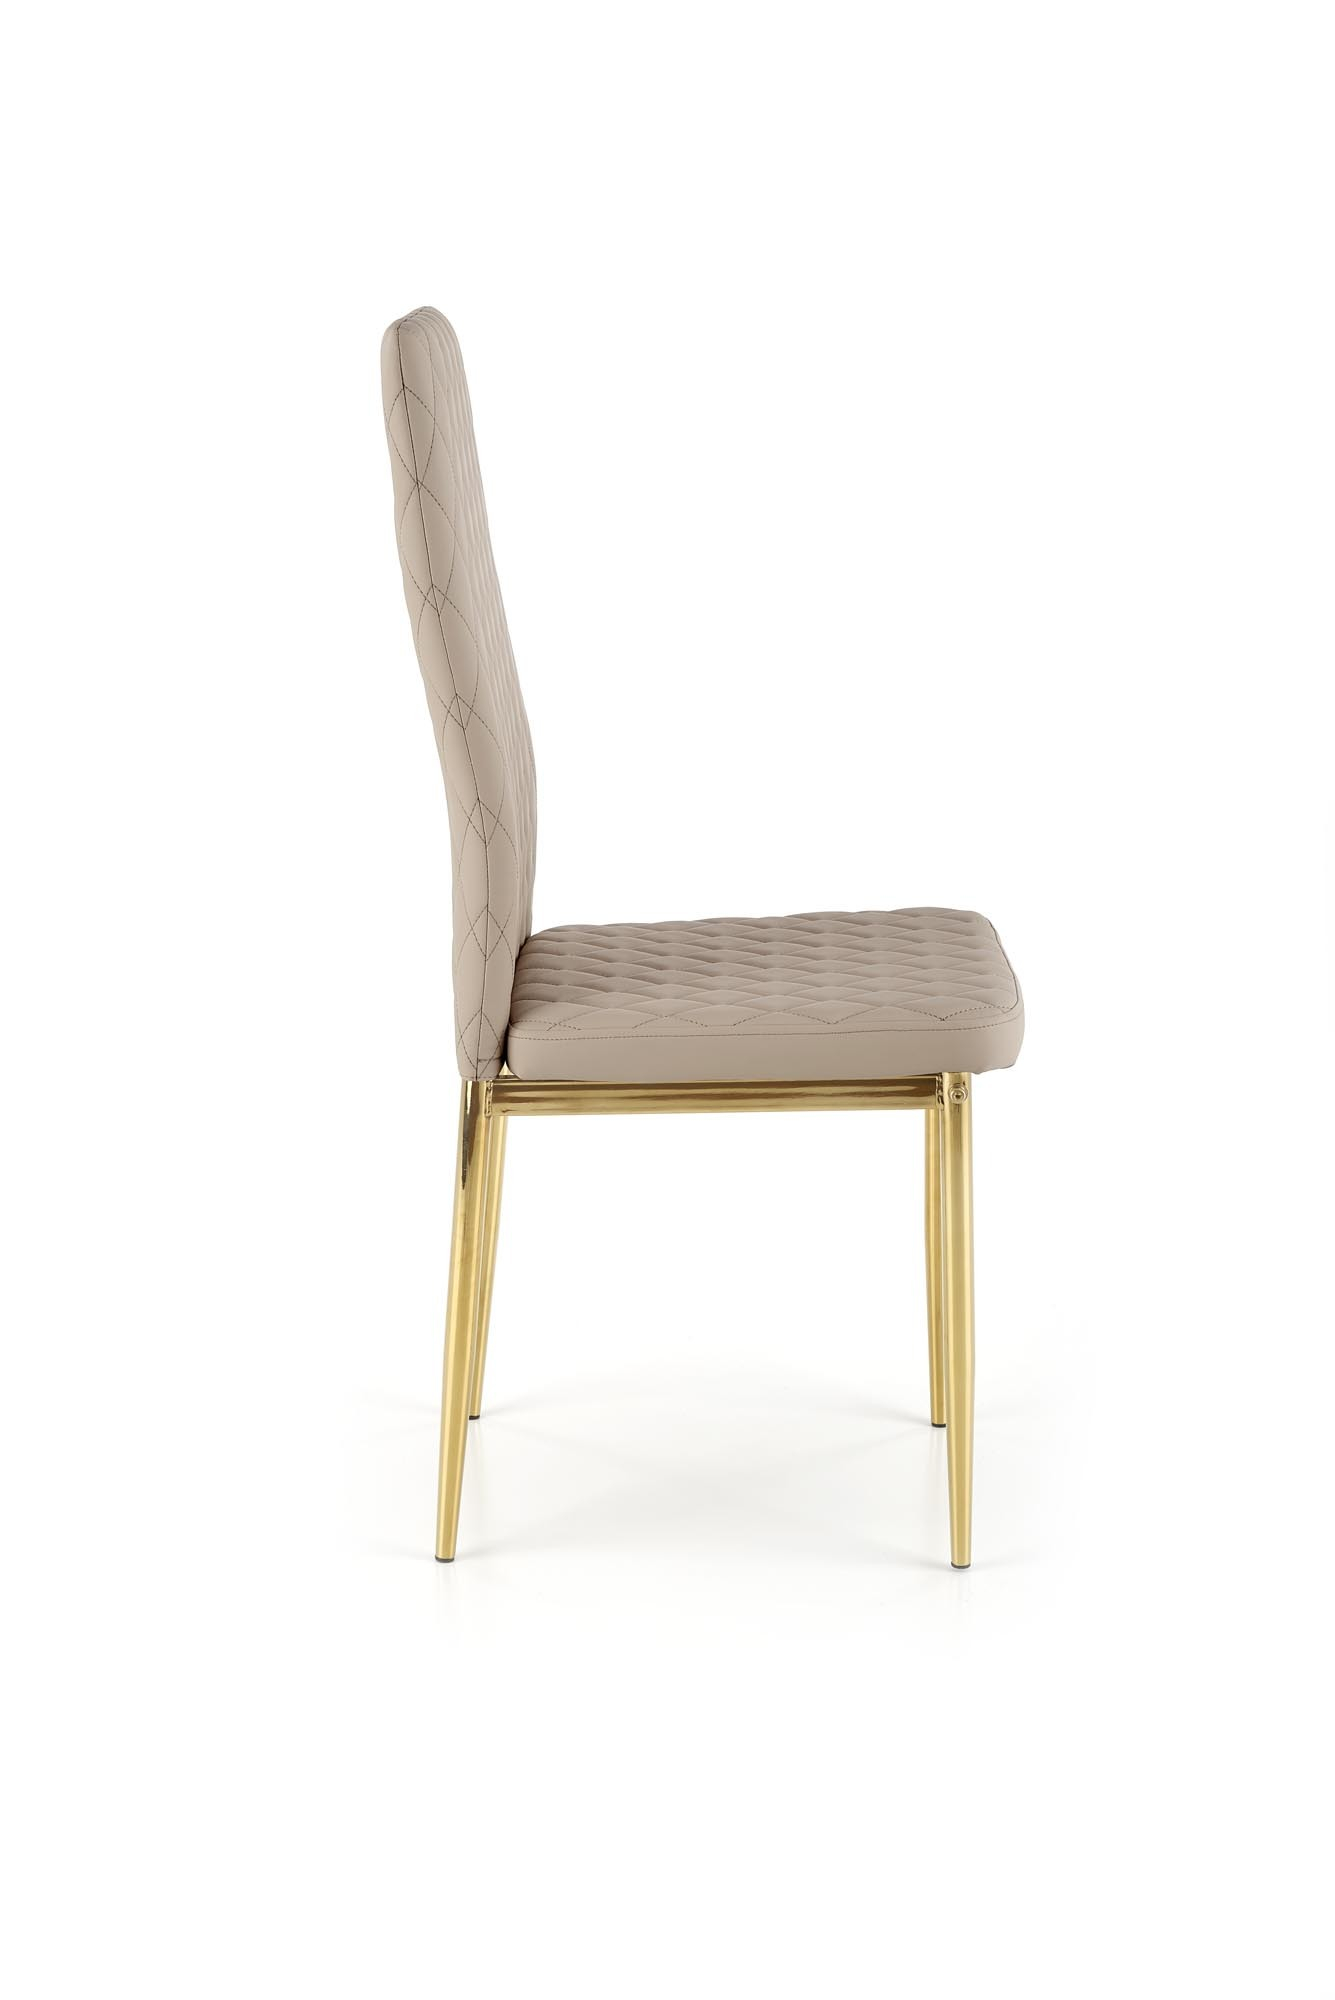 K501 krzesło cappuccino